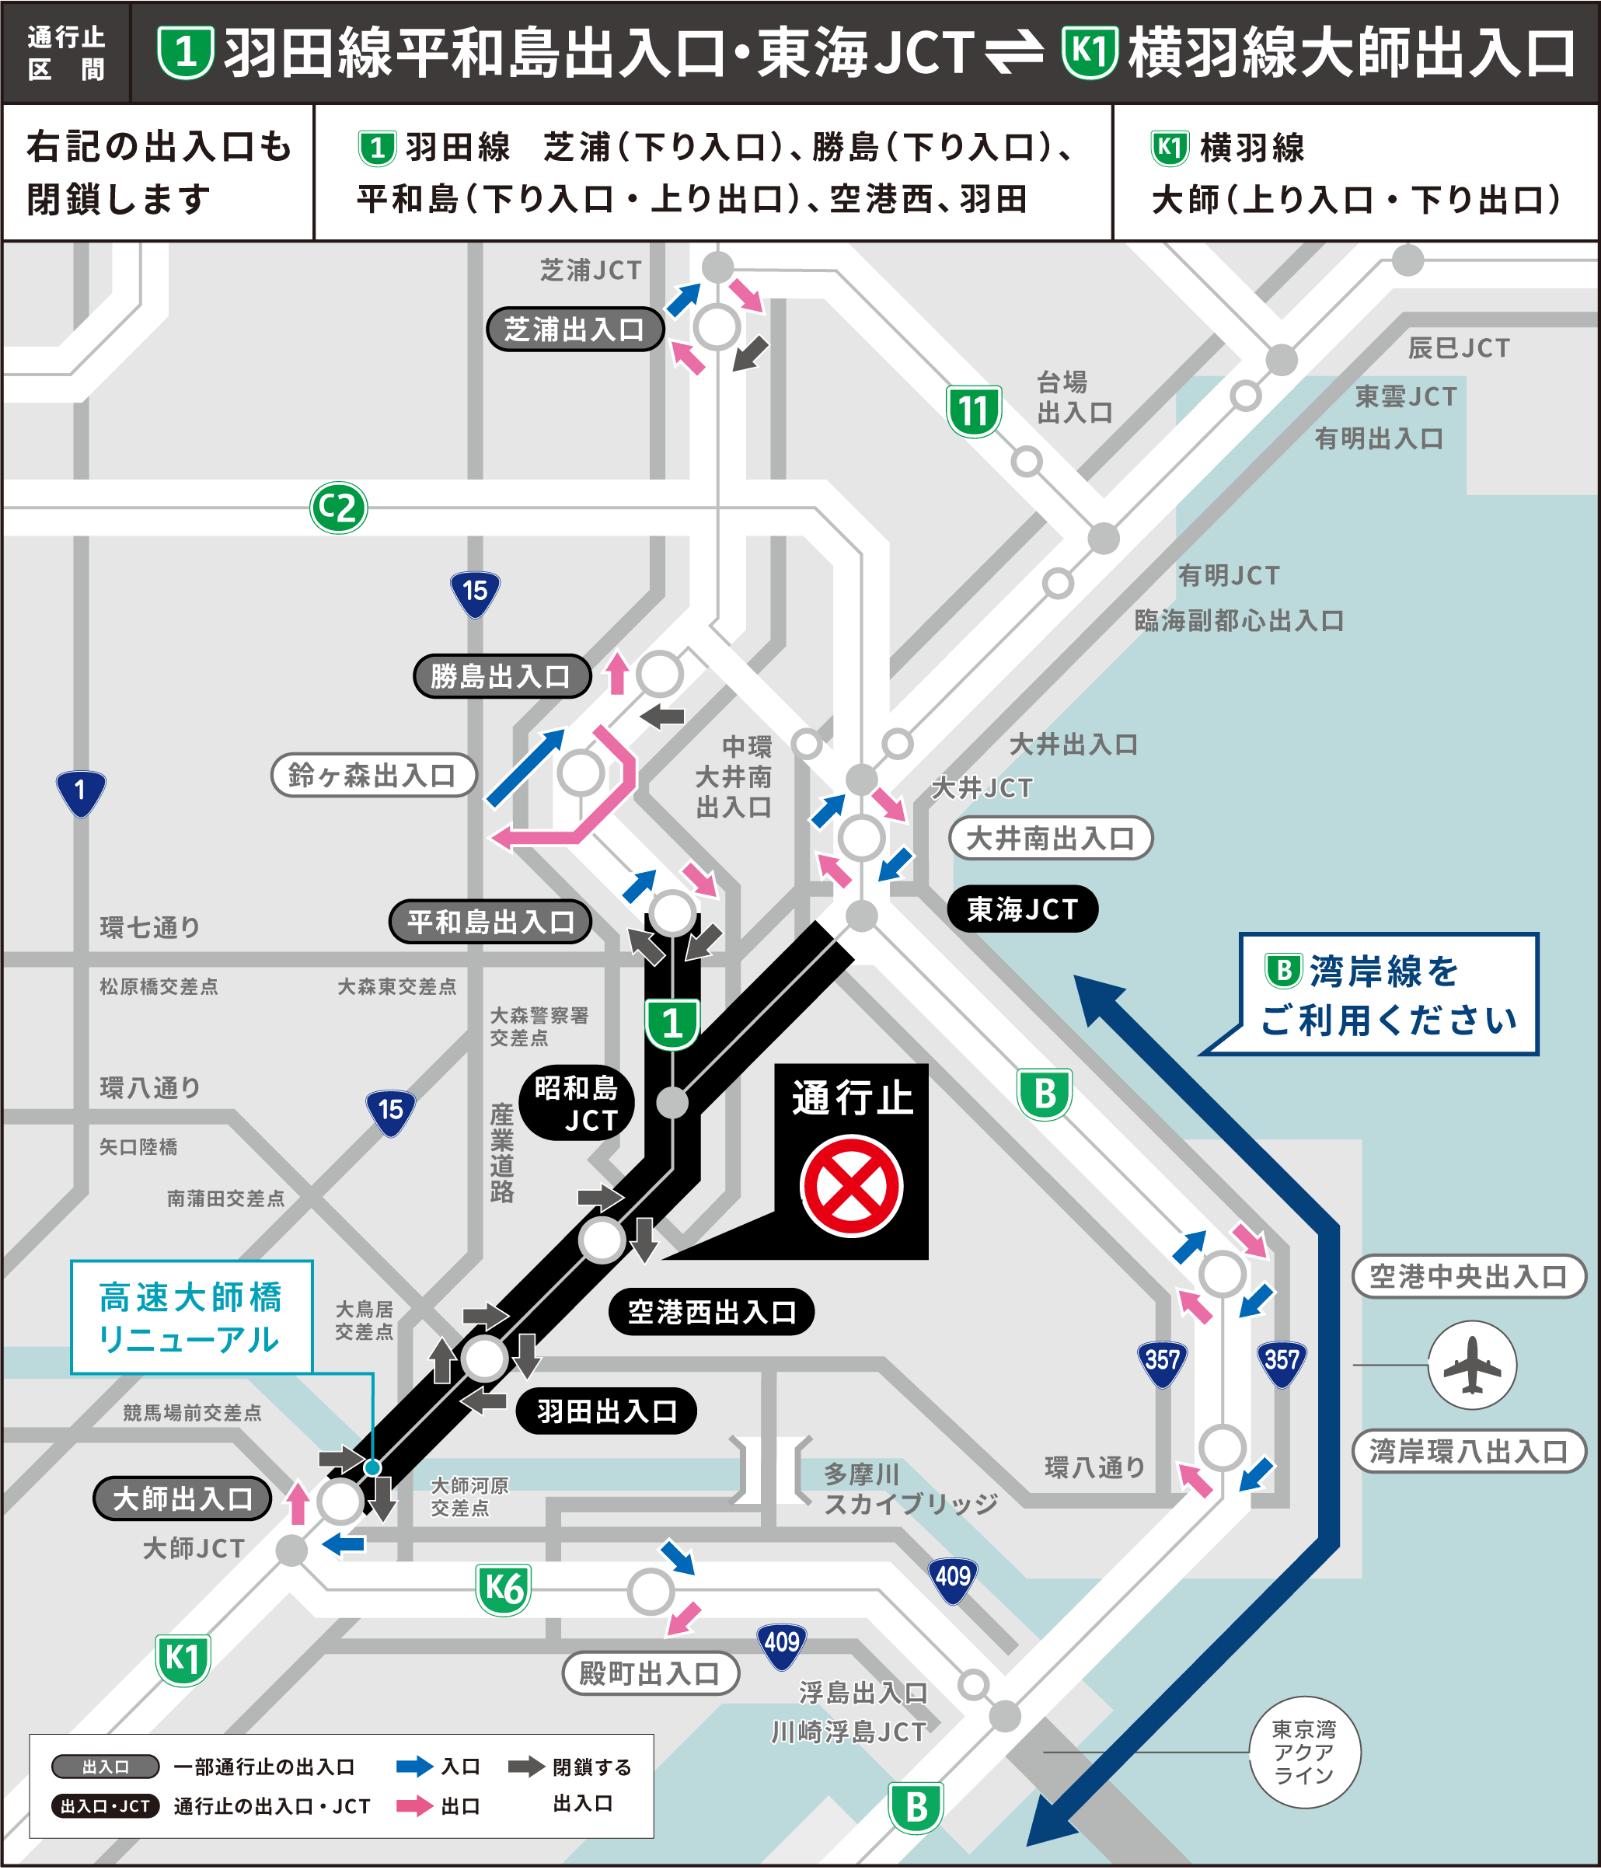 通行止区間：[1]羽田線平和島出入口・東海JCT〜[K1]横羽線大師出入口